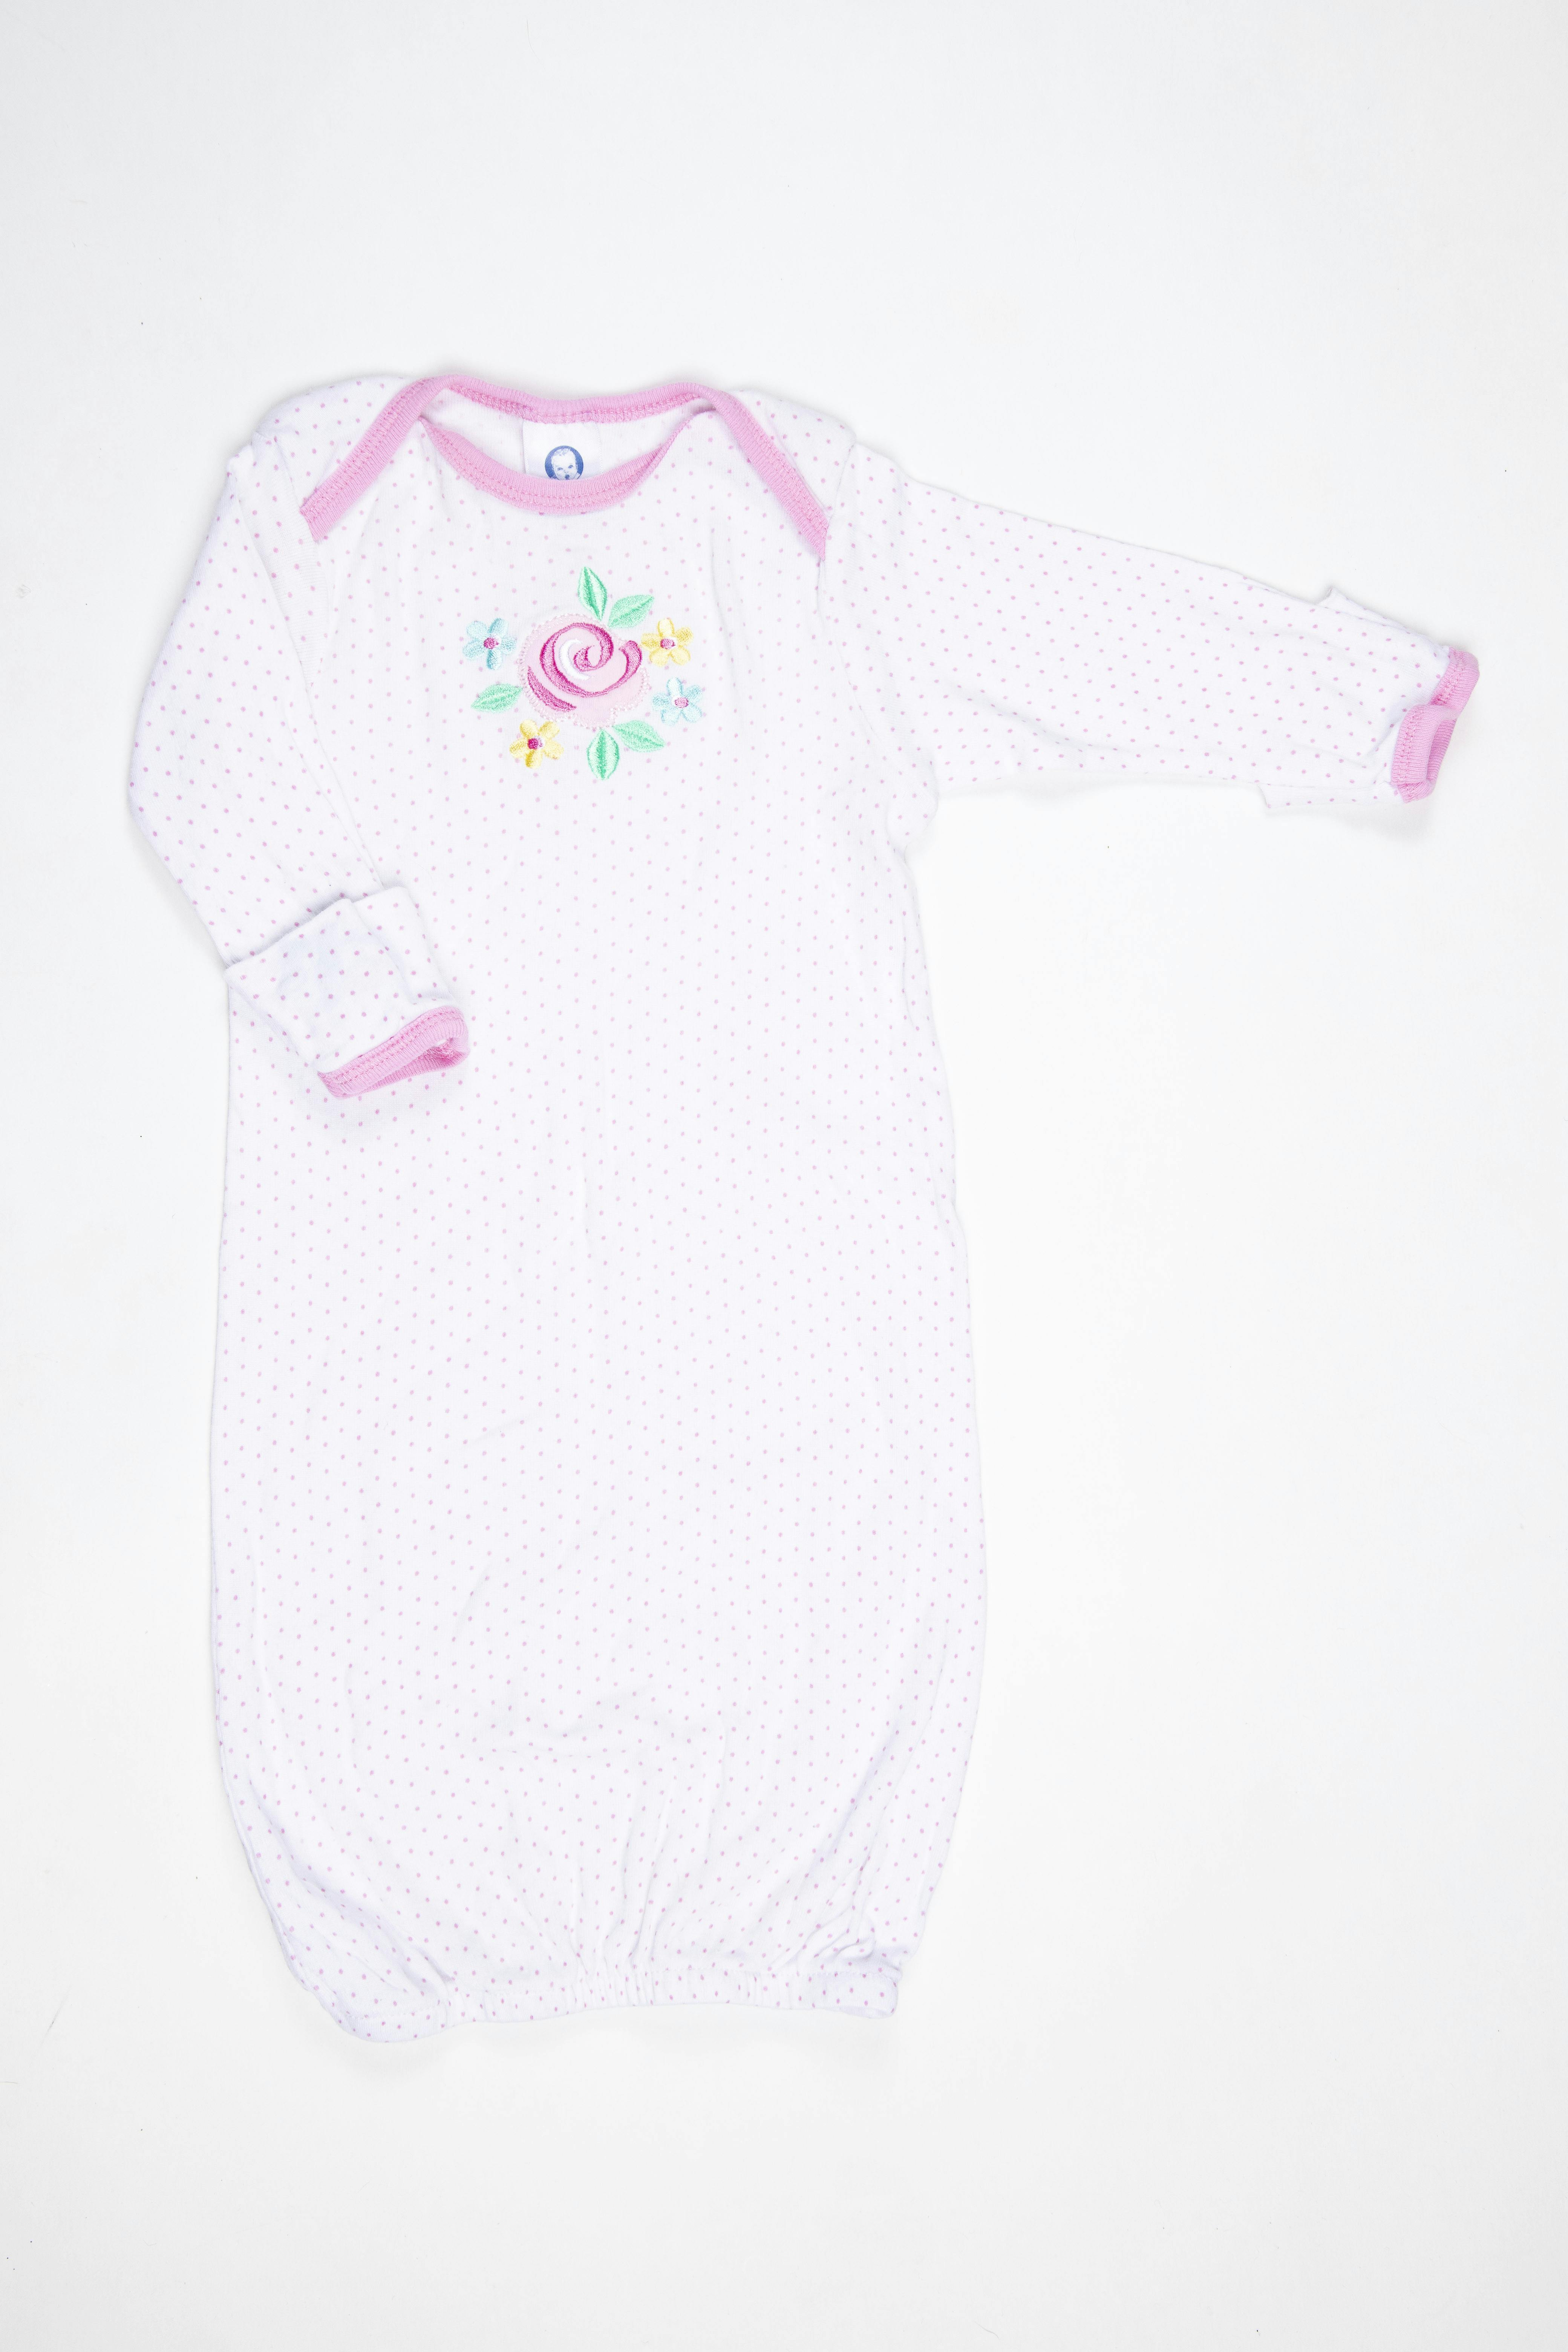 Pijama blanco con manoplas de puntos rosas y flor, 100% algodón - Gerber